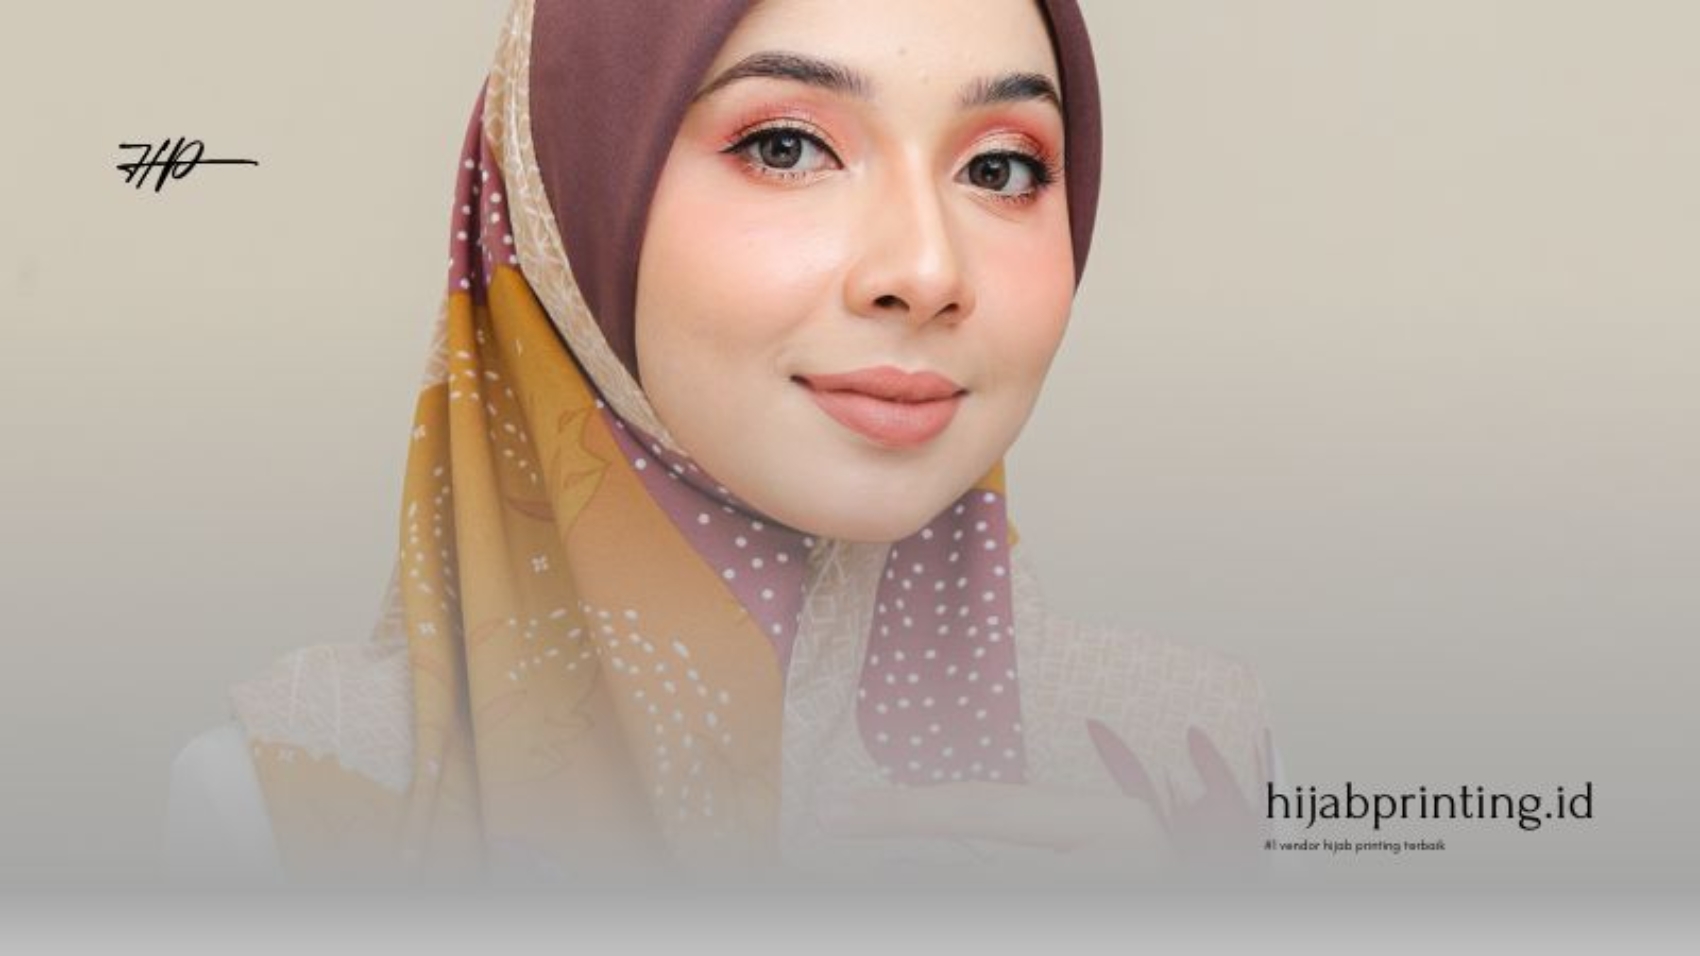 Cetak Hijab Printing Custom Segi Empat Bahan Voal Bandung Berkualitas